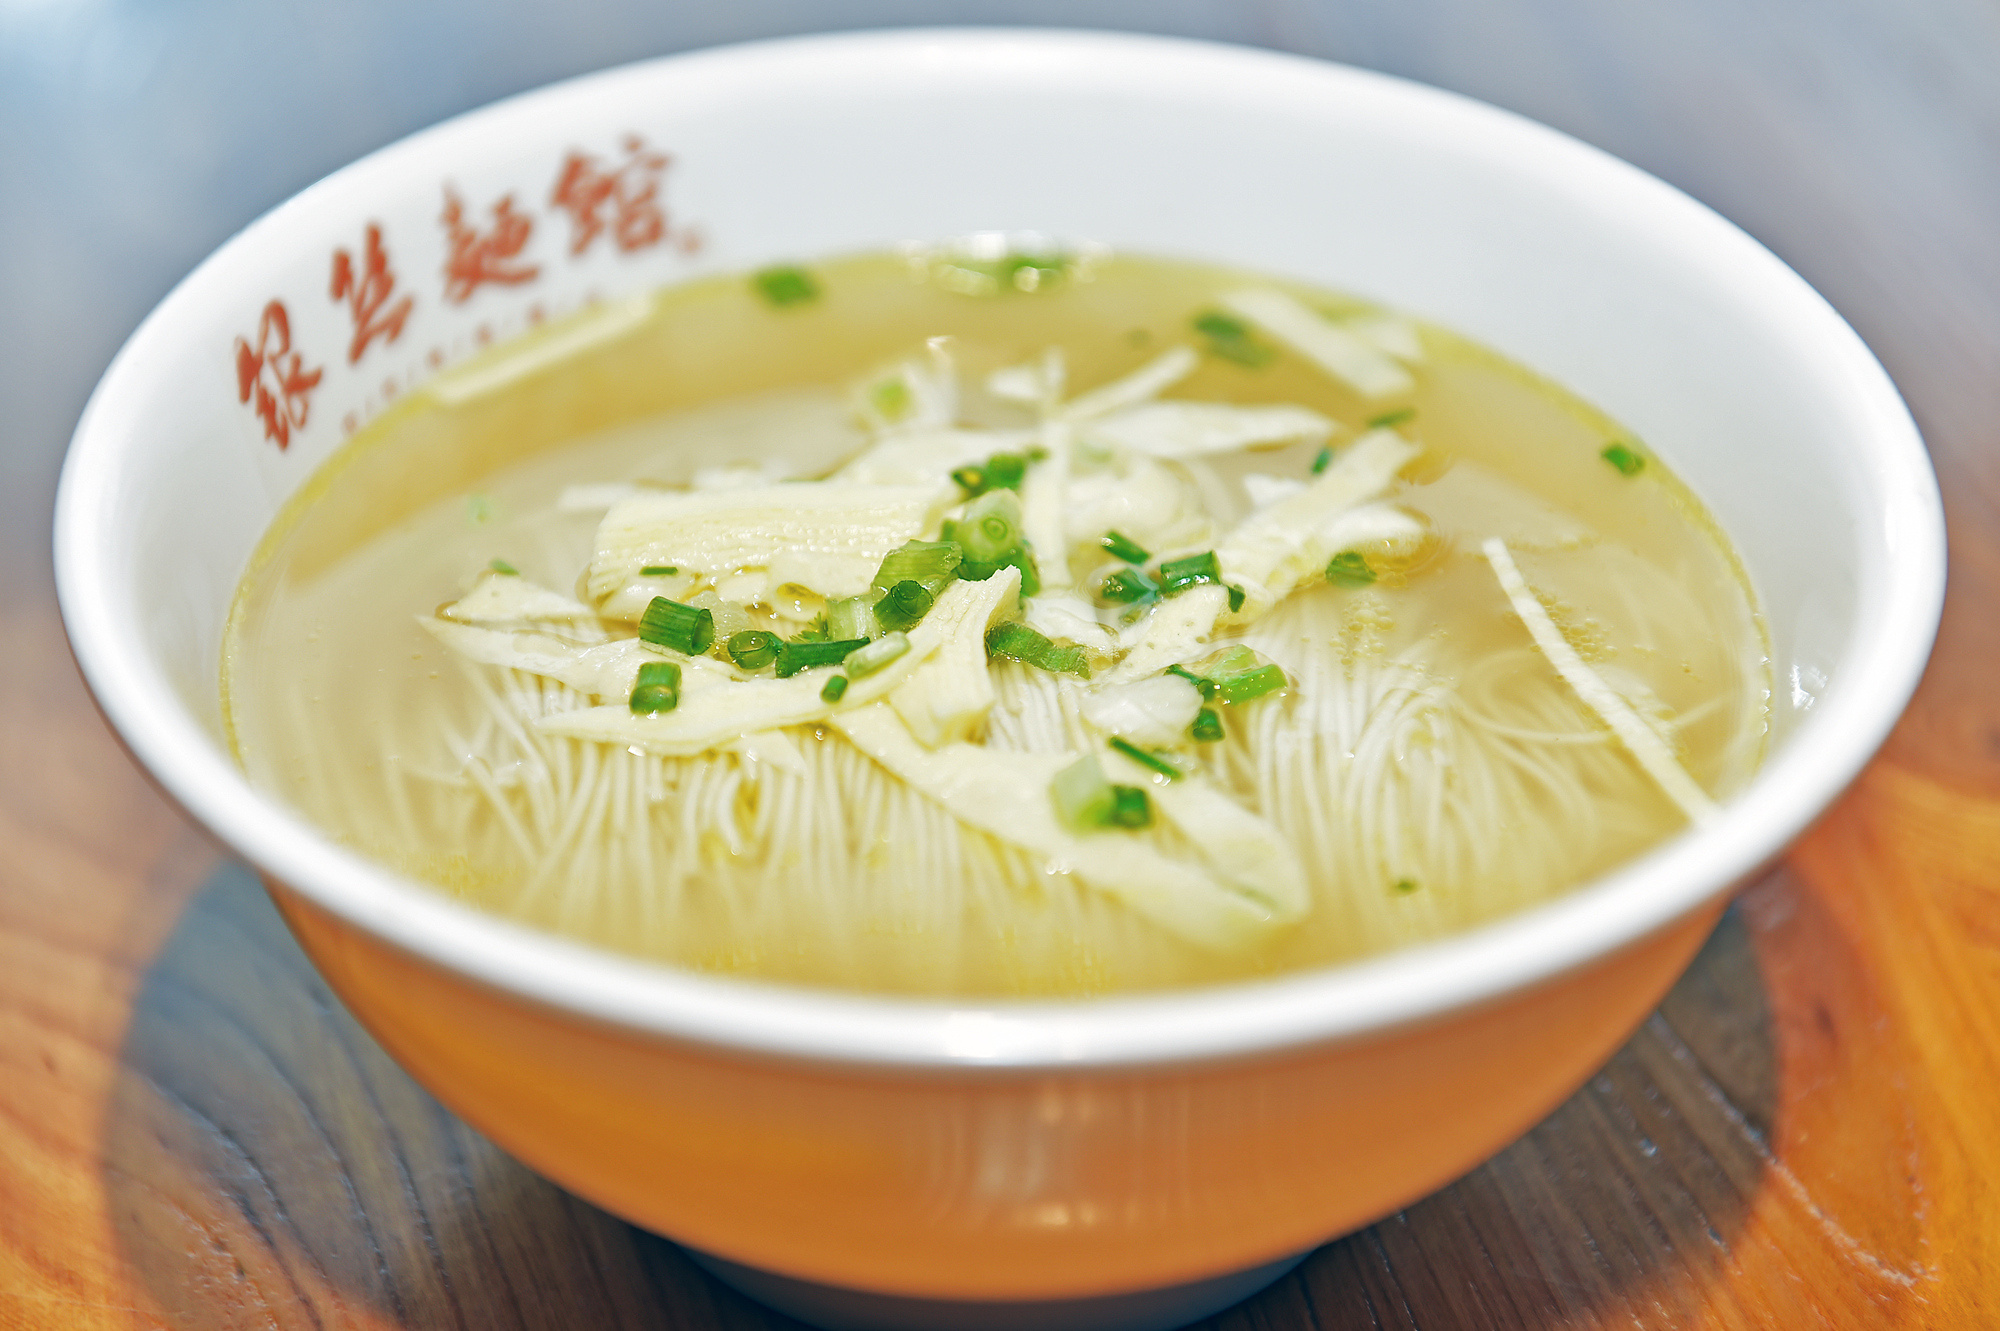 这棵“大白菜”是普通白菜40倍 成为全国第一“白菜”_资讯_凤凰网